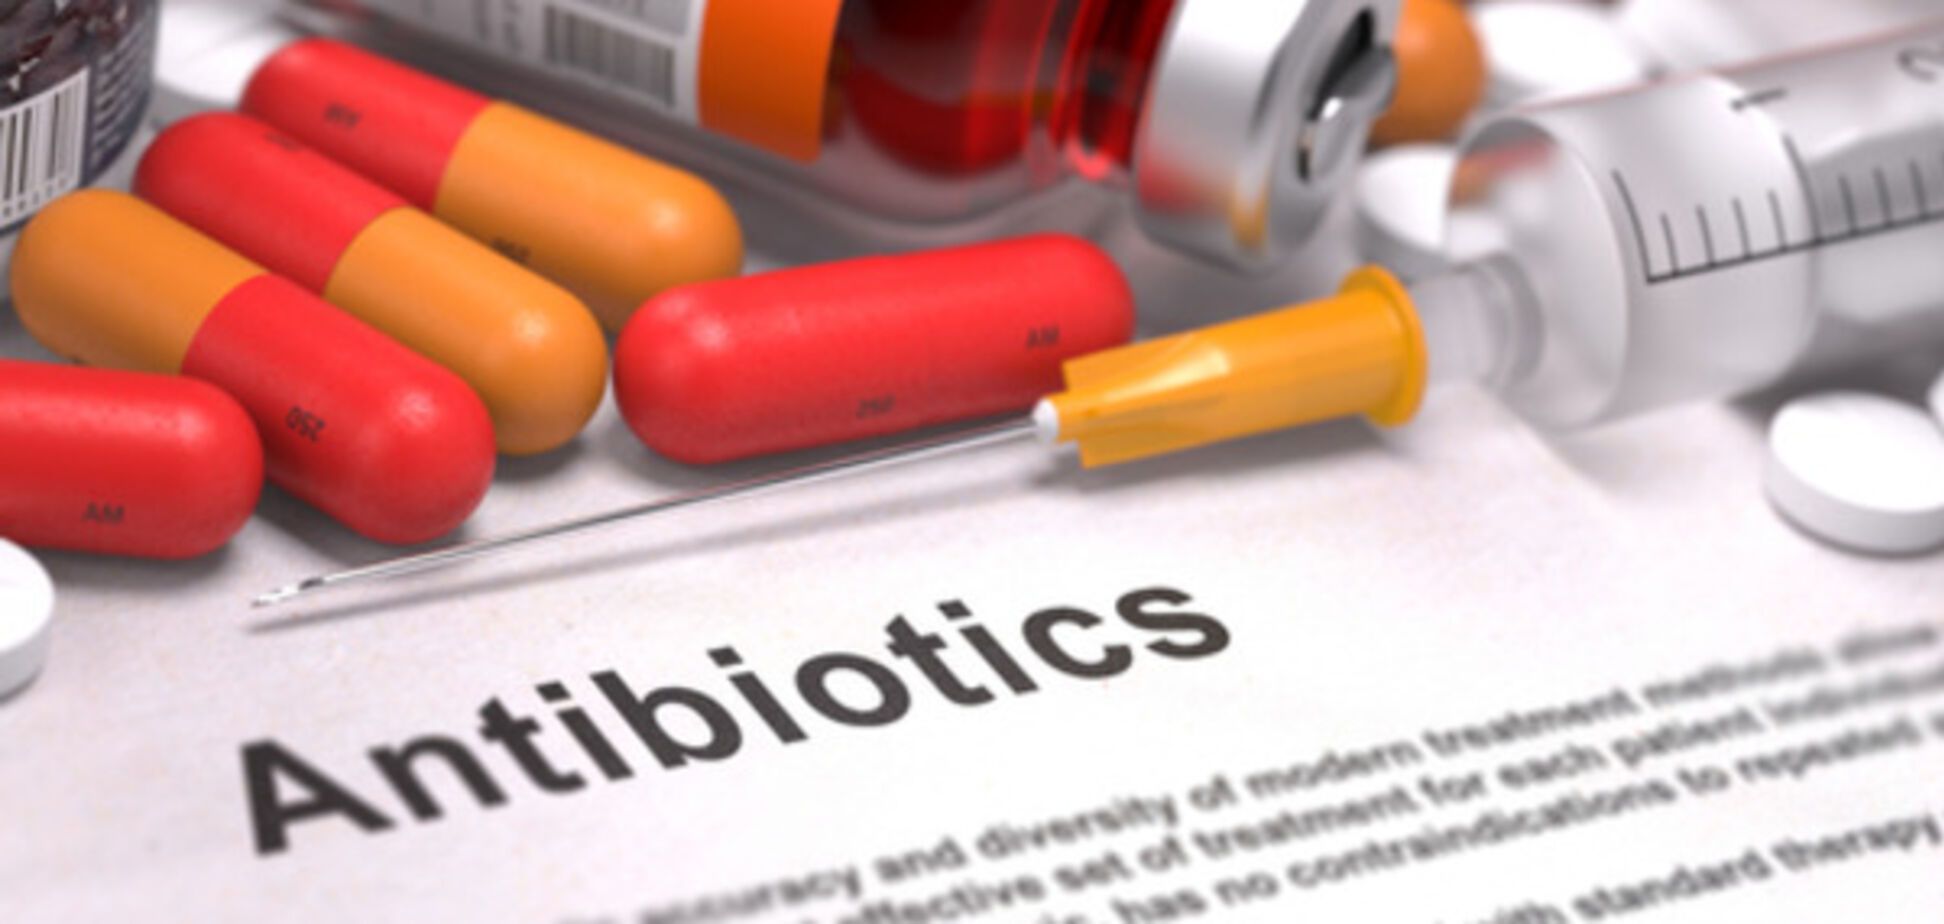 Устойчивость к антибиотикам растет, причина - неправильный прием пациентами